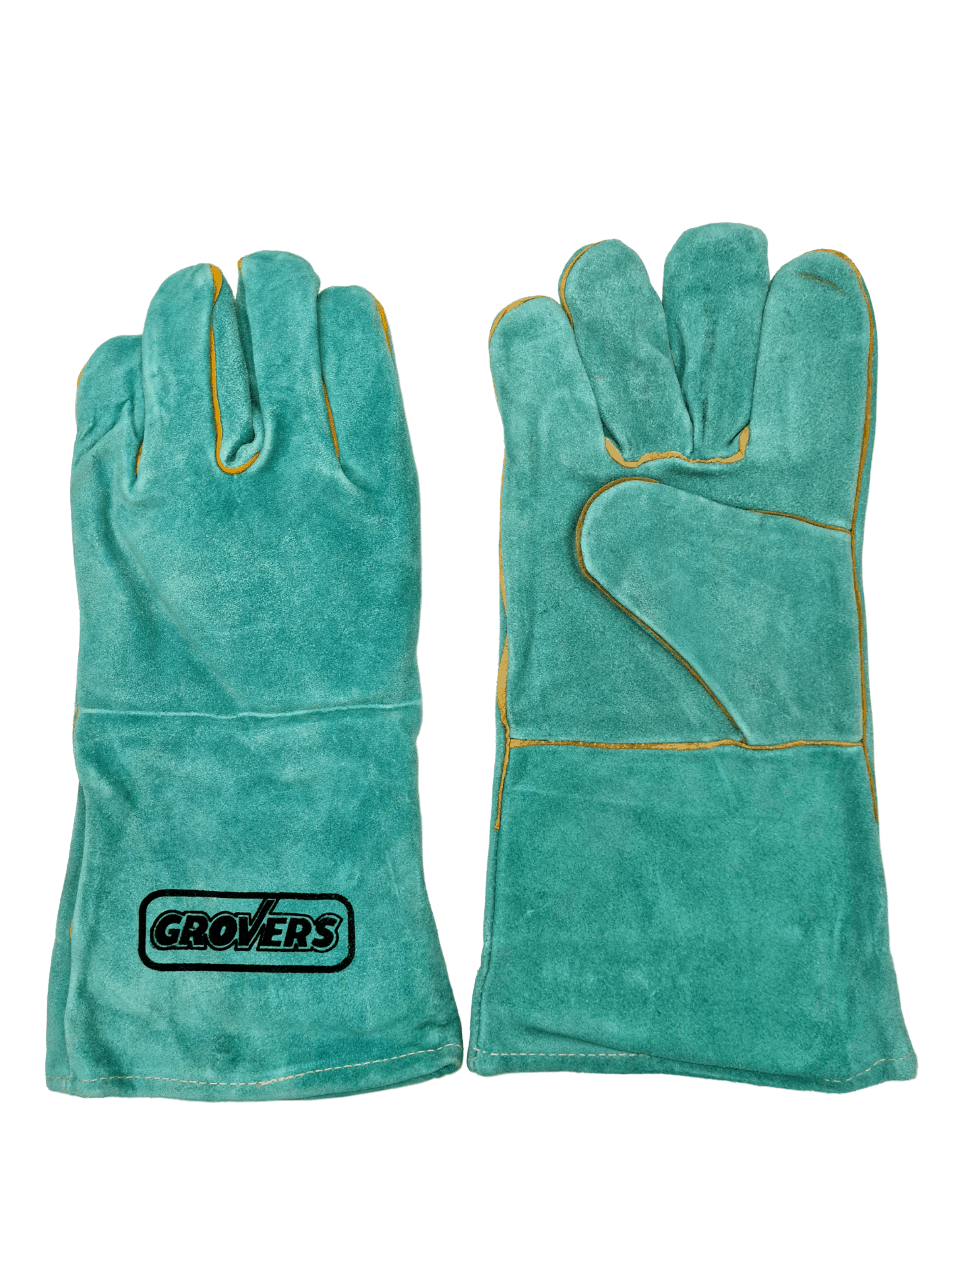    (S-796) Long Gloves, - 10